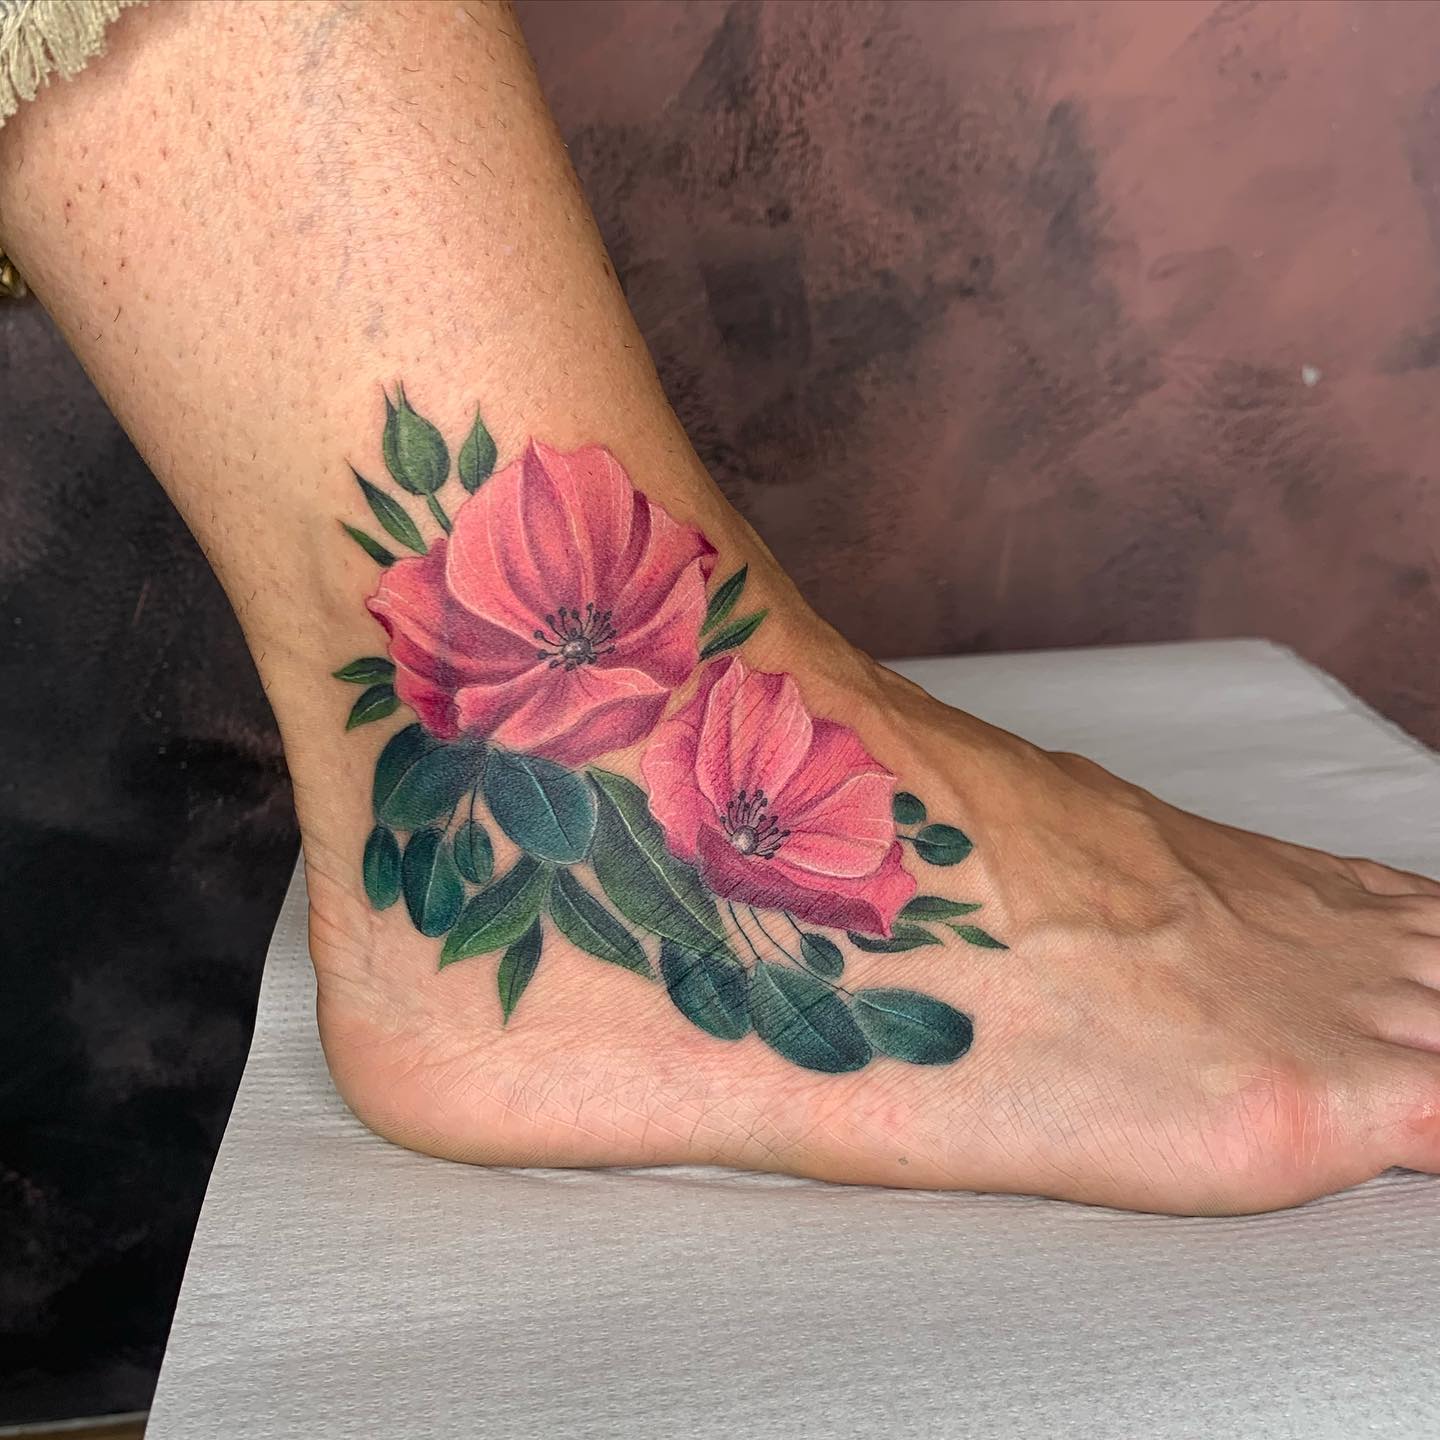 Tatuaje de Flor Cosmos en el Tobillo.